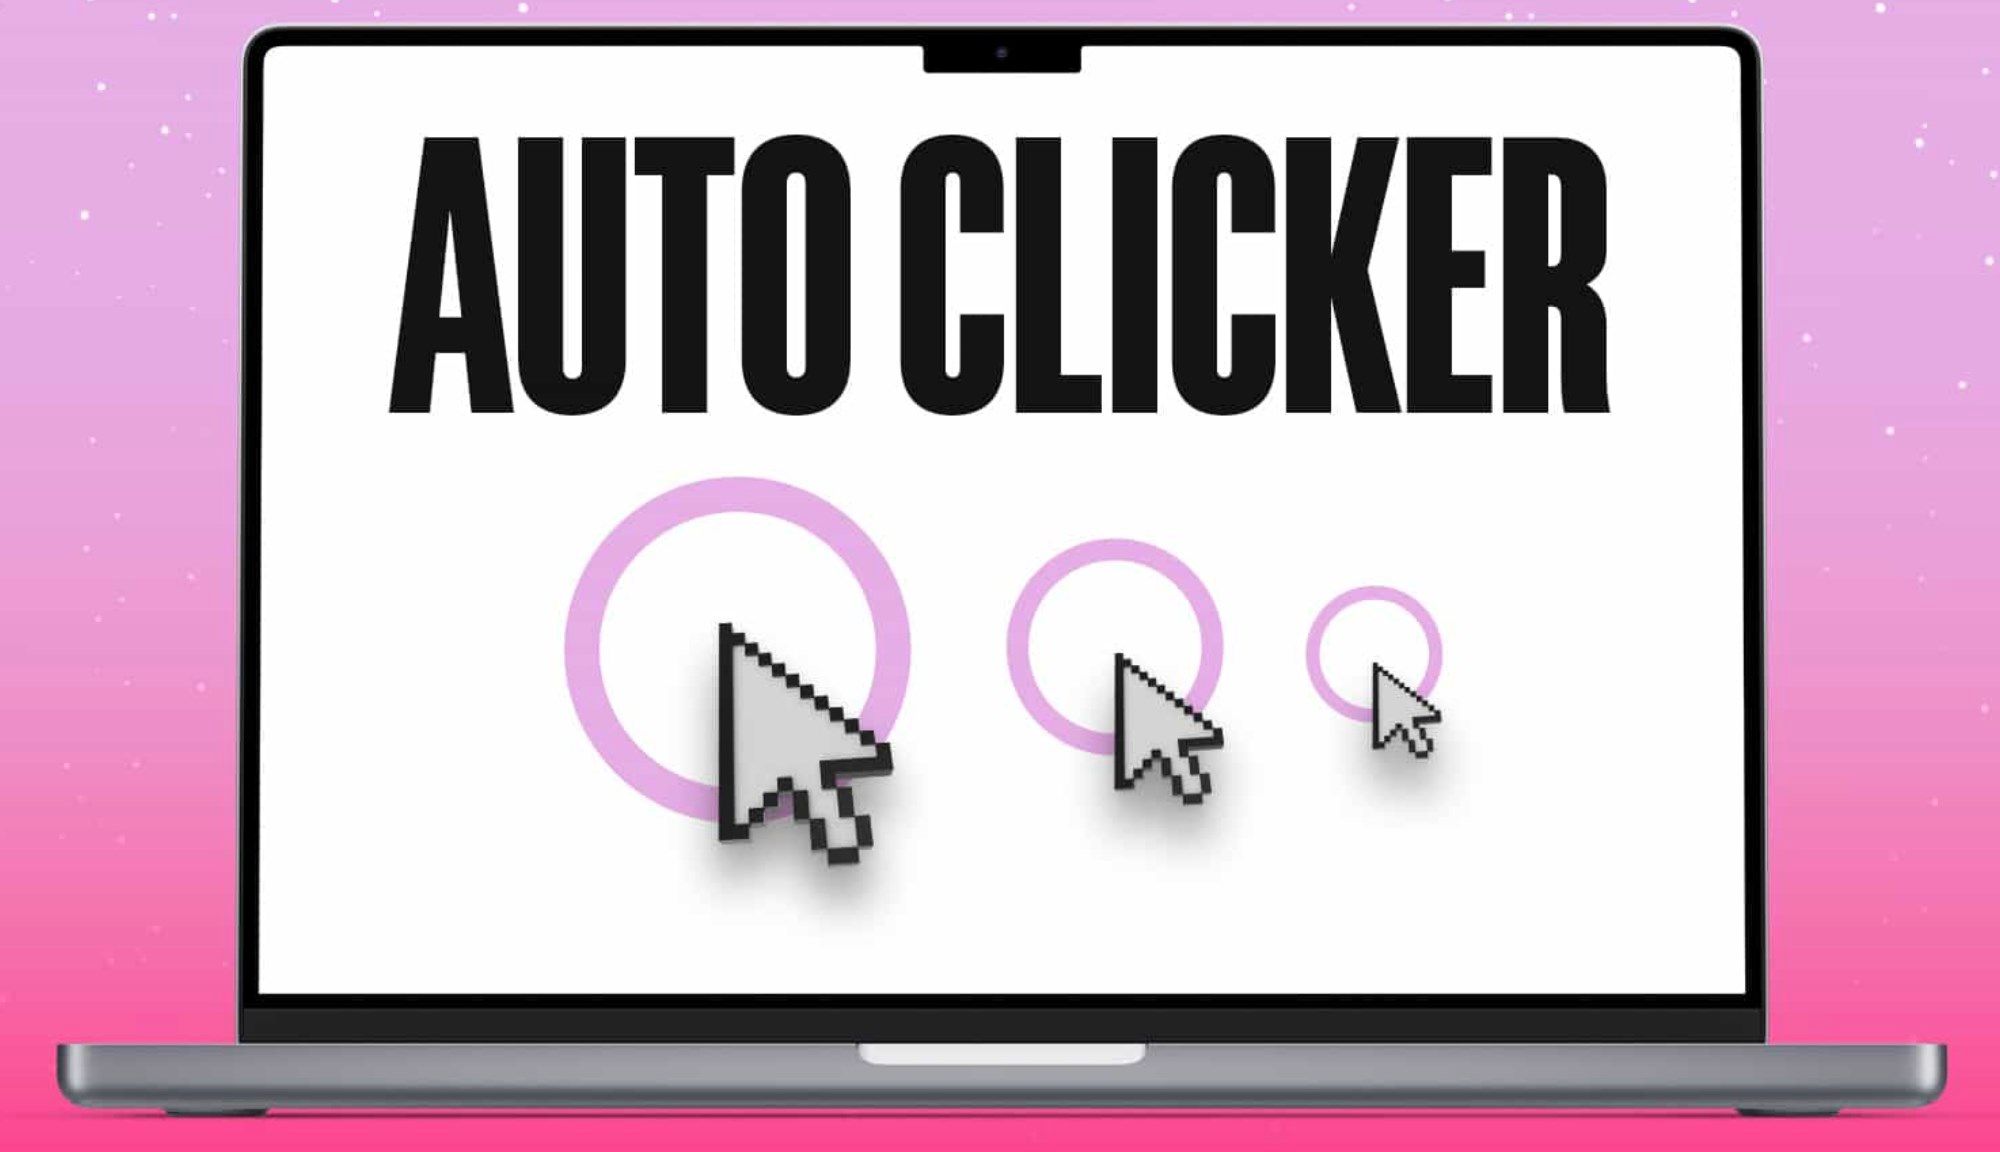 Auto Key Presser - Auto Clicker